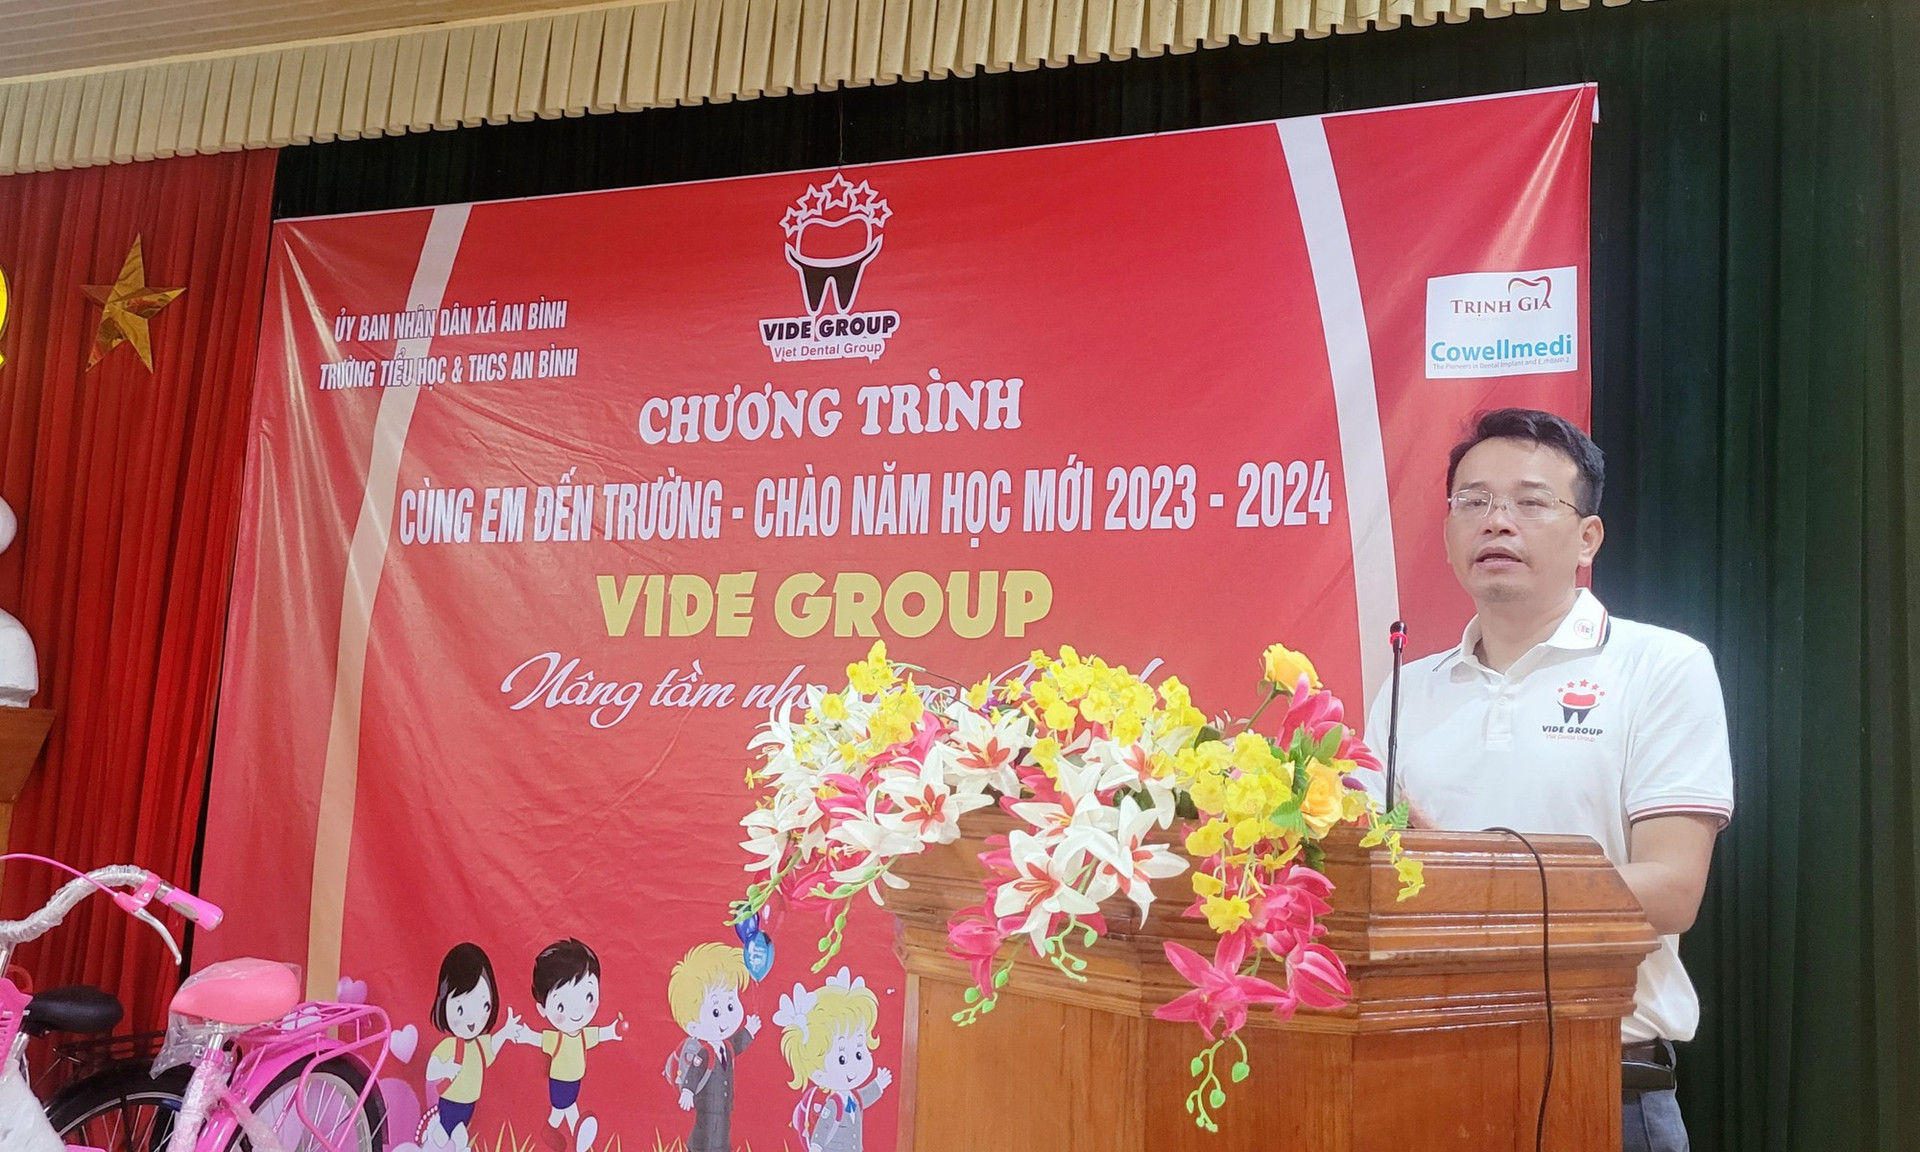 Cộng đồng Nha khoa Việt trao tặng nhiều phần quà ý nghĩa “Cùng em đến trường” - Ảnh 3.